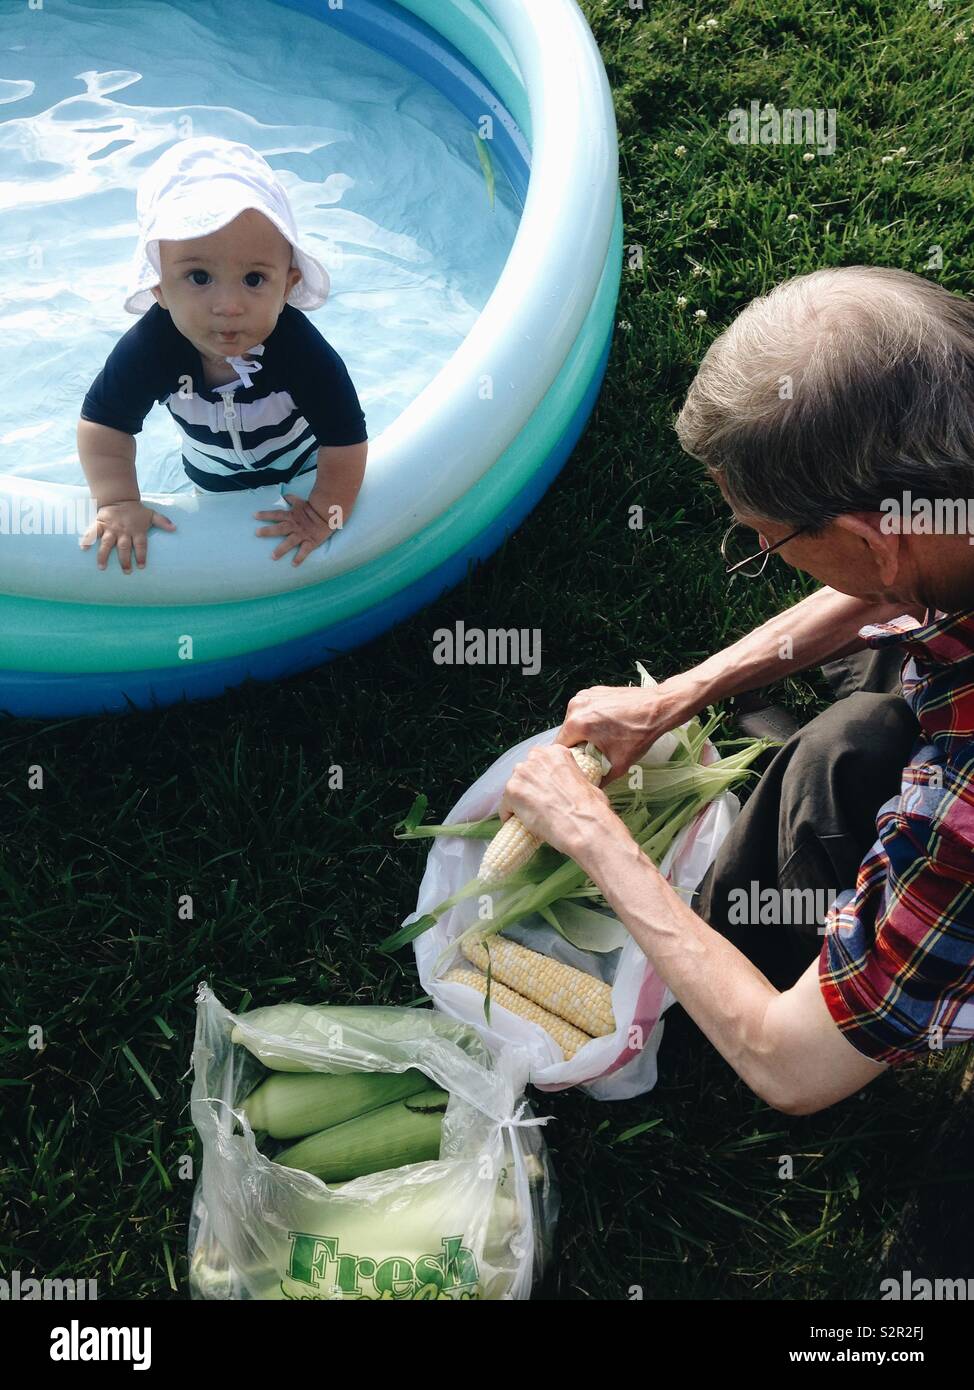 Bambino in un striped costume e cappello bianco si appoggia sul bordo di un  blu piscina gonfiabile a guardare il suo nonno vestito di reed plaid  manicotto corto shuck bucce di mais